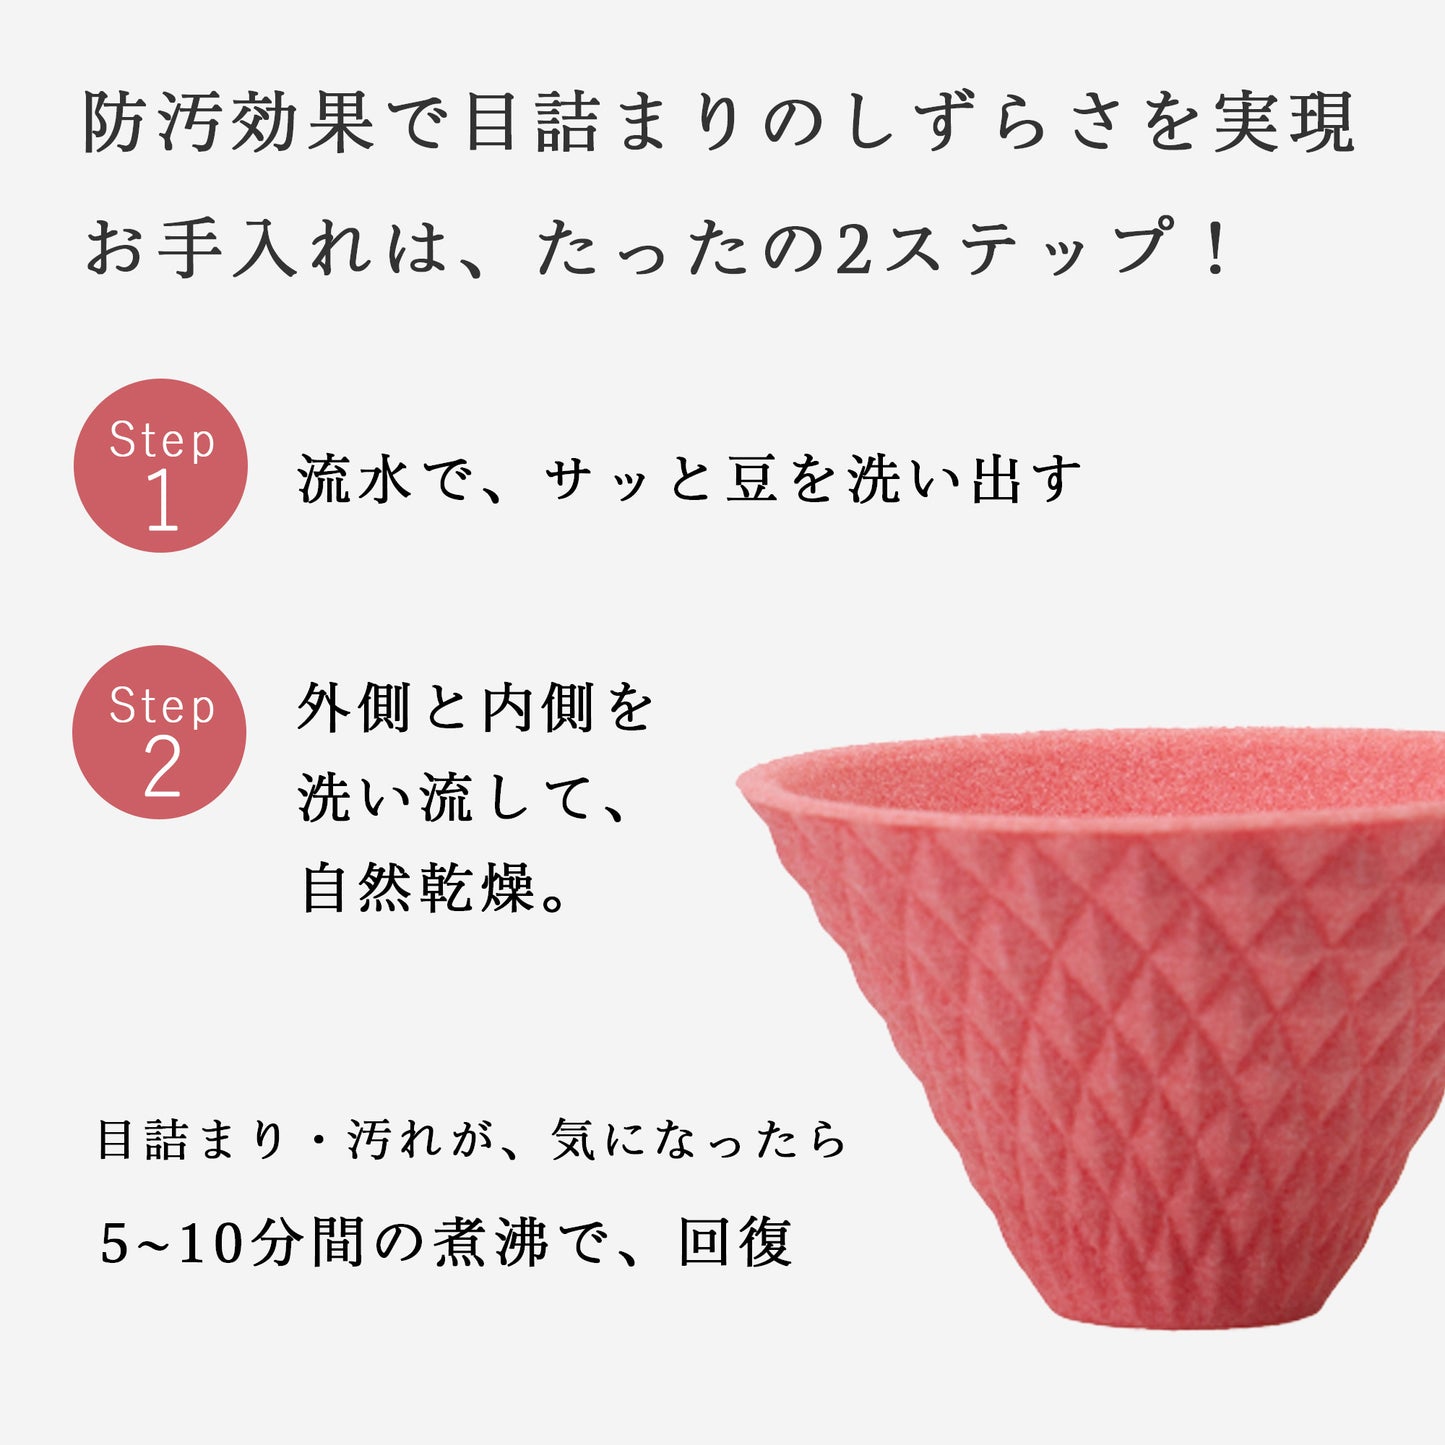 [波佐見焼] ekubo one drip セラミックコーヒーフィルター Salmon pink